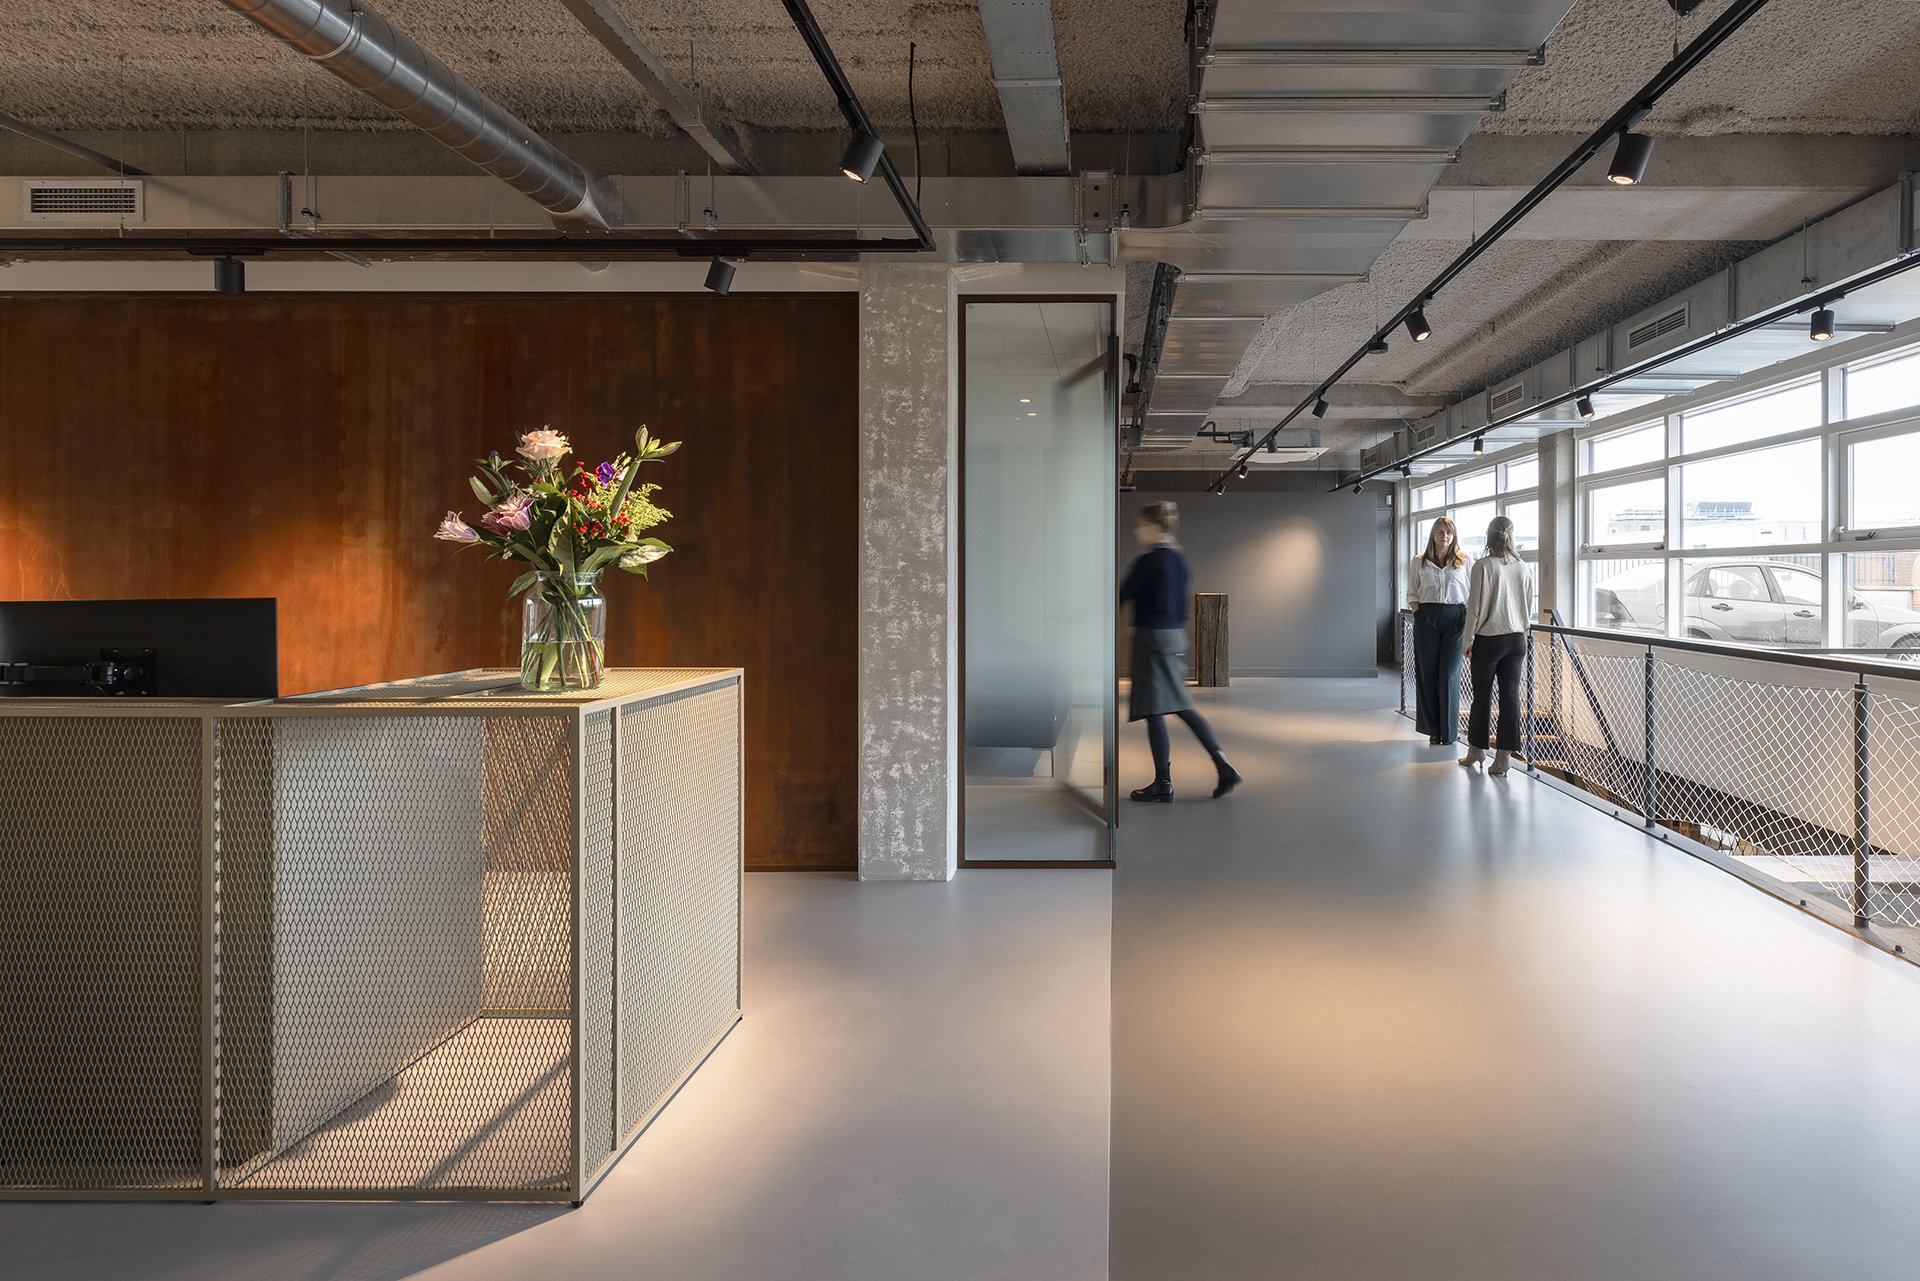 Architectuur ontwerp door het architectenbureau Fokkema & Partners, voor een accountant kantoor met een gietvloer, een kortend stalen muren effect